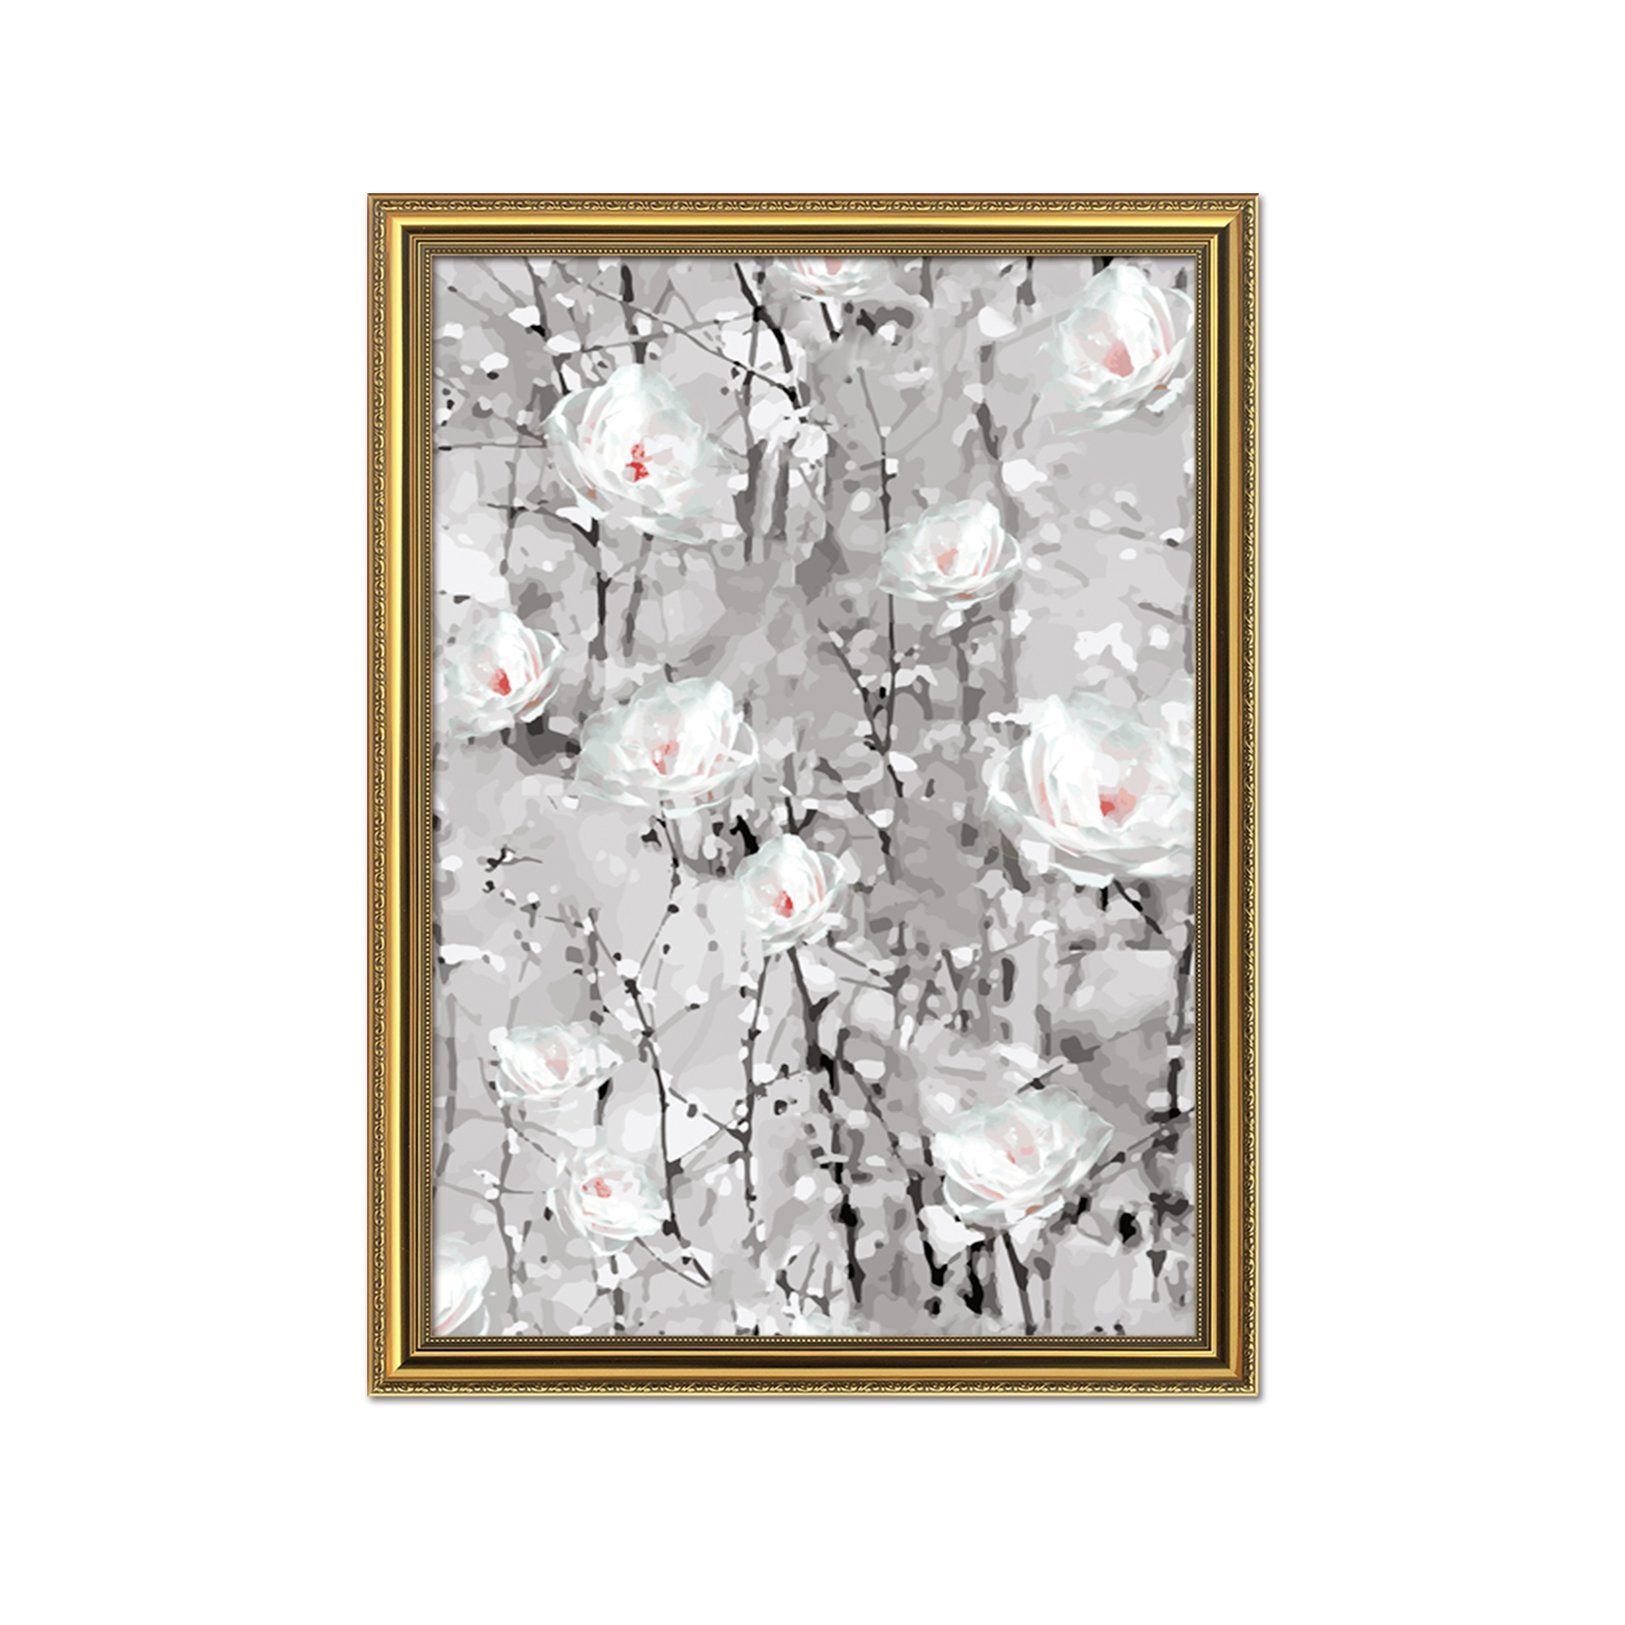 3D White Flower 071 Fake Framed Print Painting Wallpaper AJ Creativity Home 